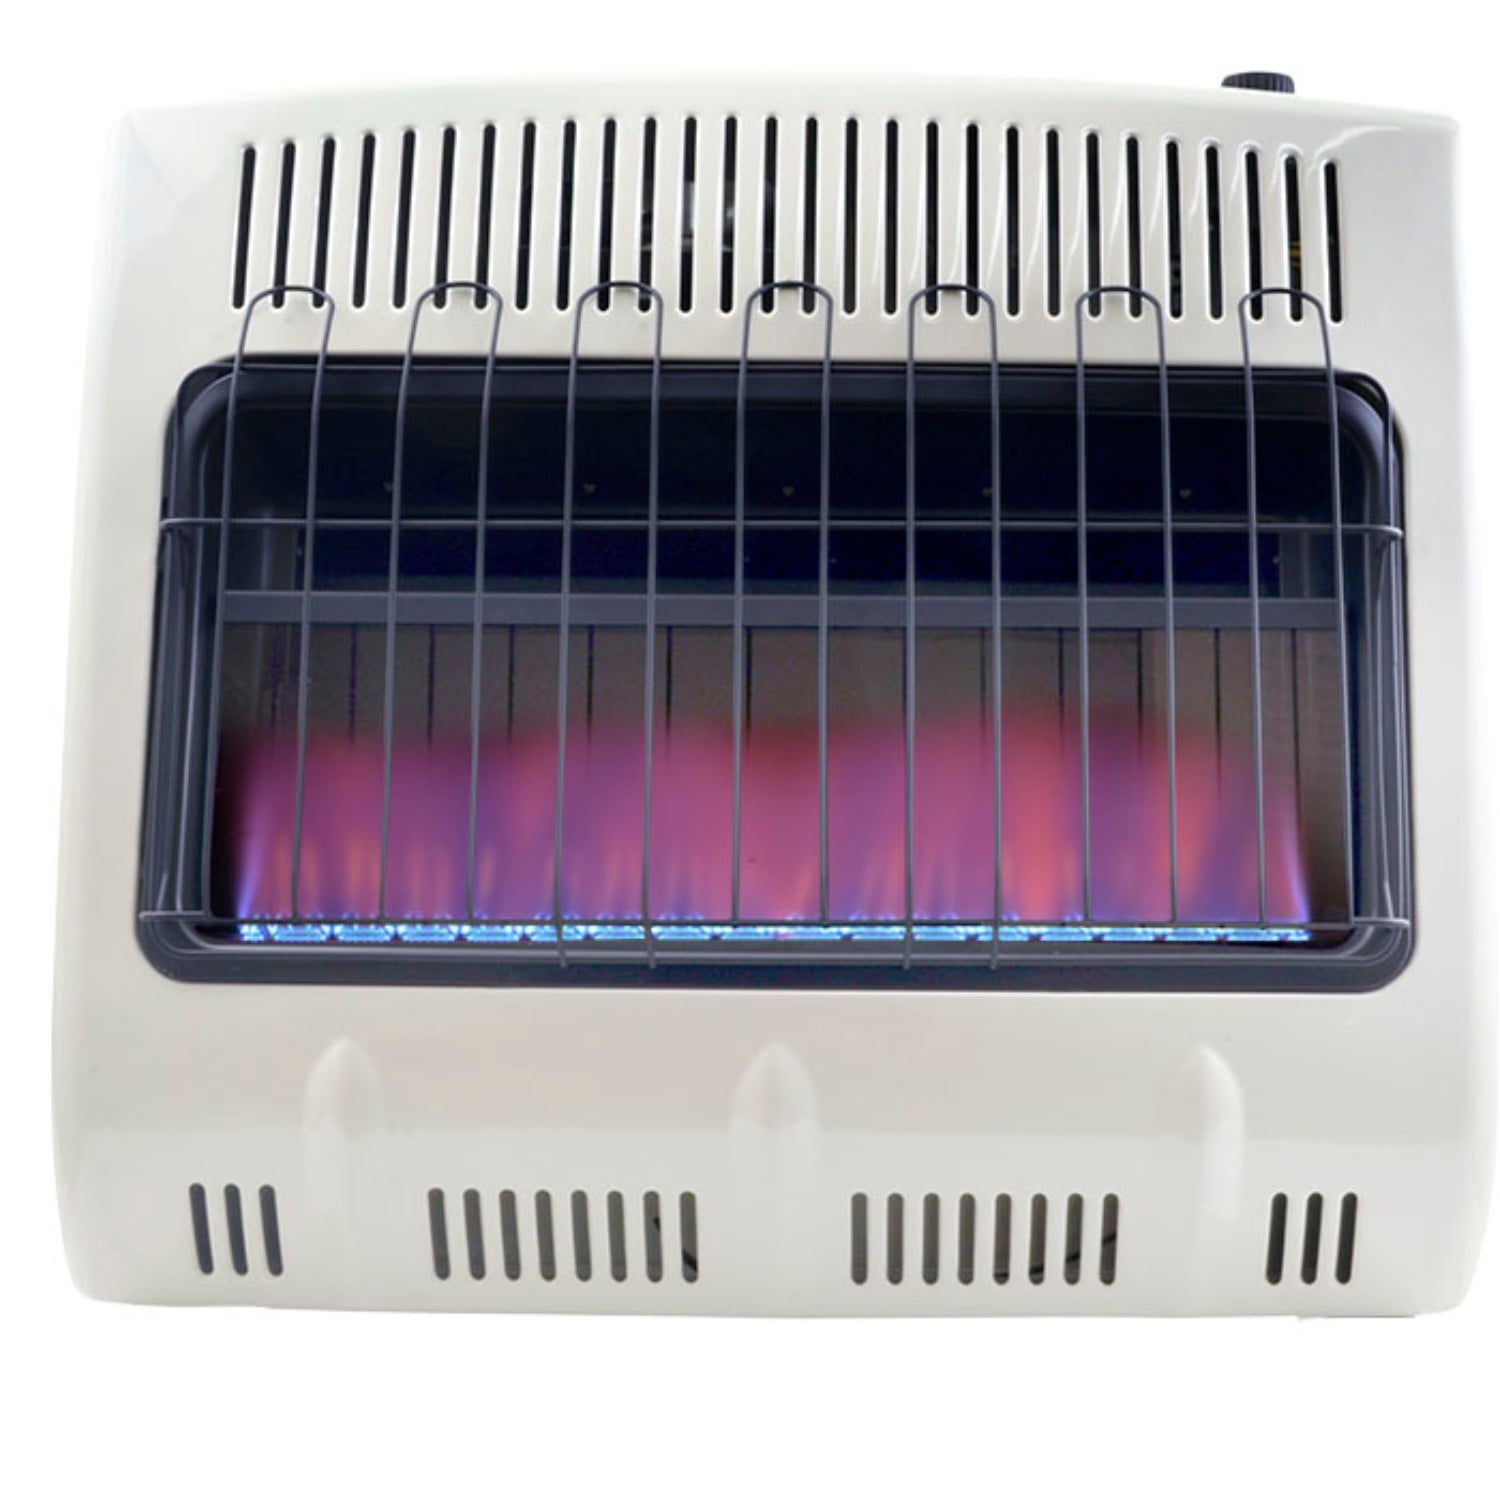 Mr Heater 30 000 Btu Vent Free Blue Flame Propane Heater In White Walmart Com